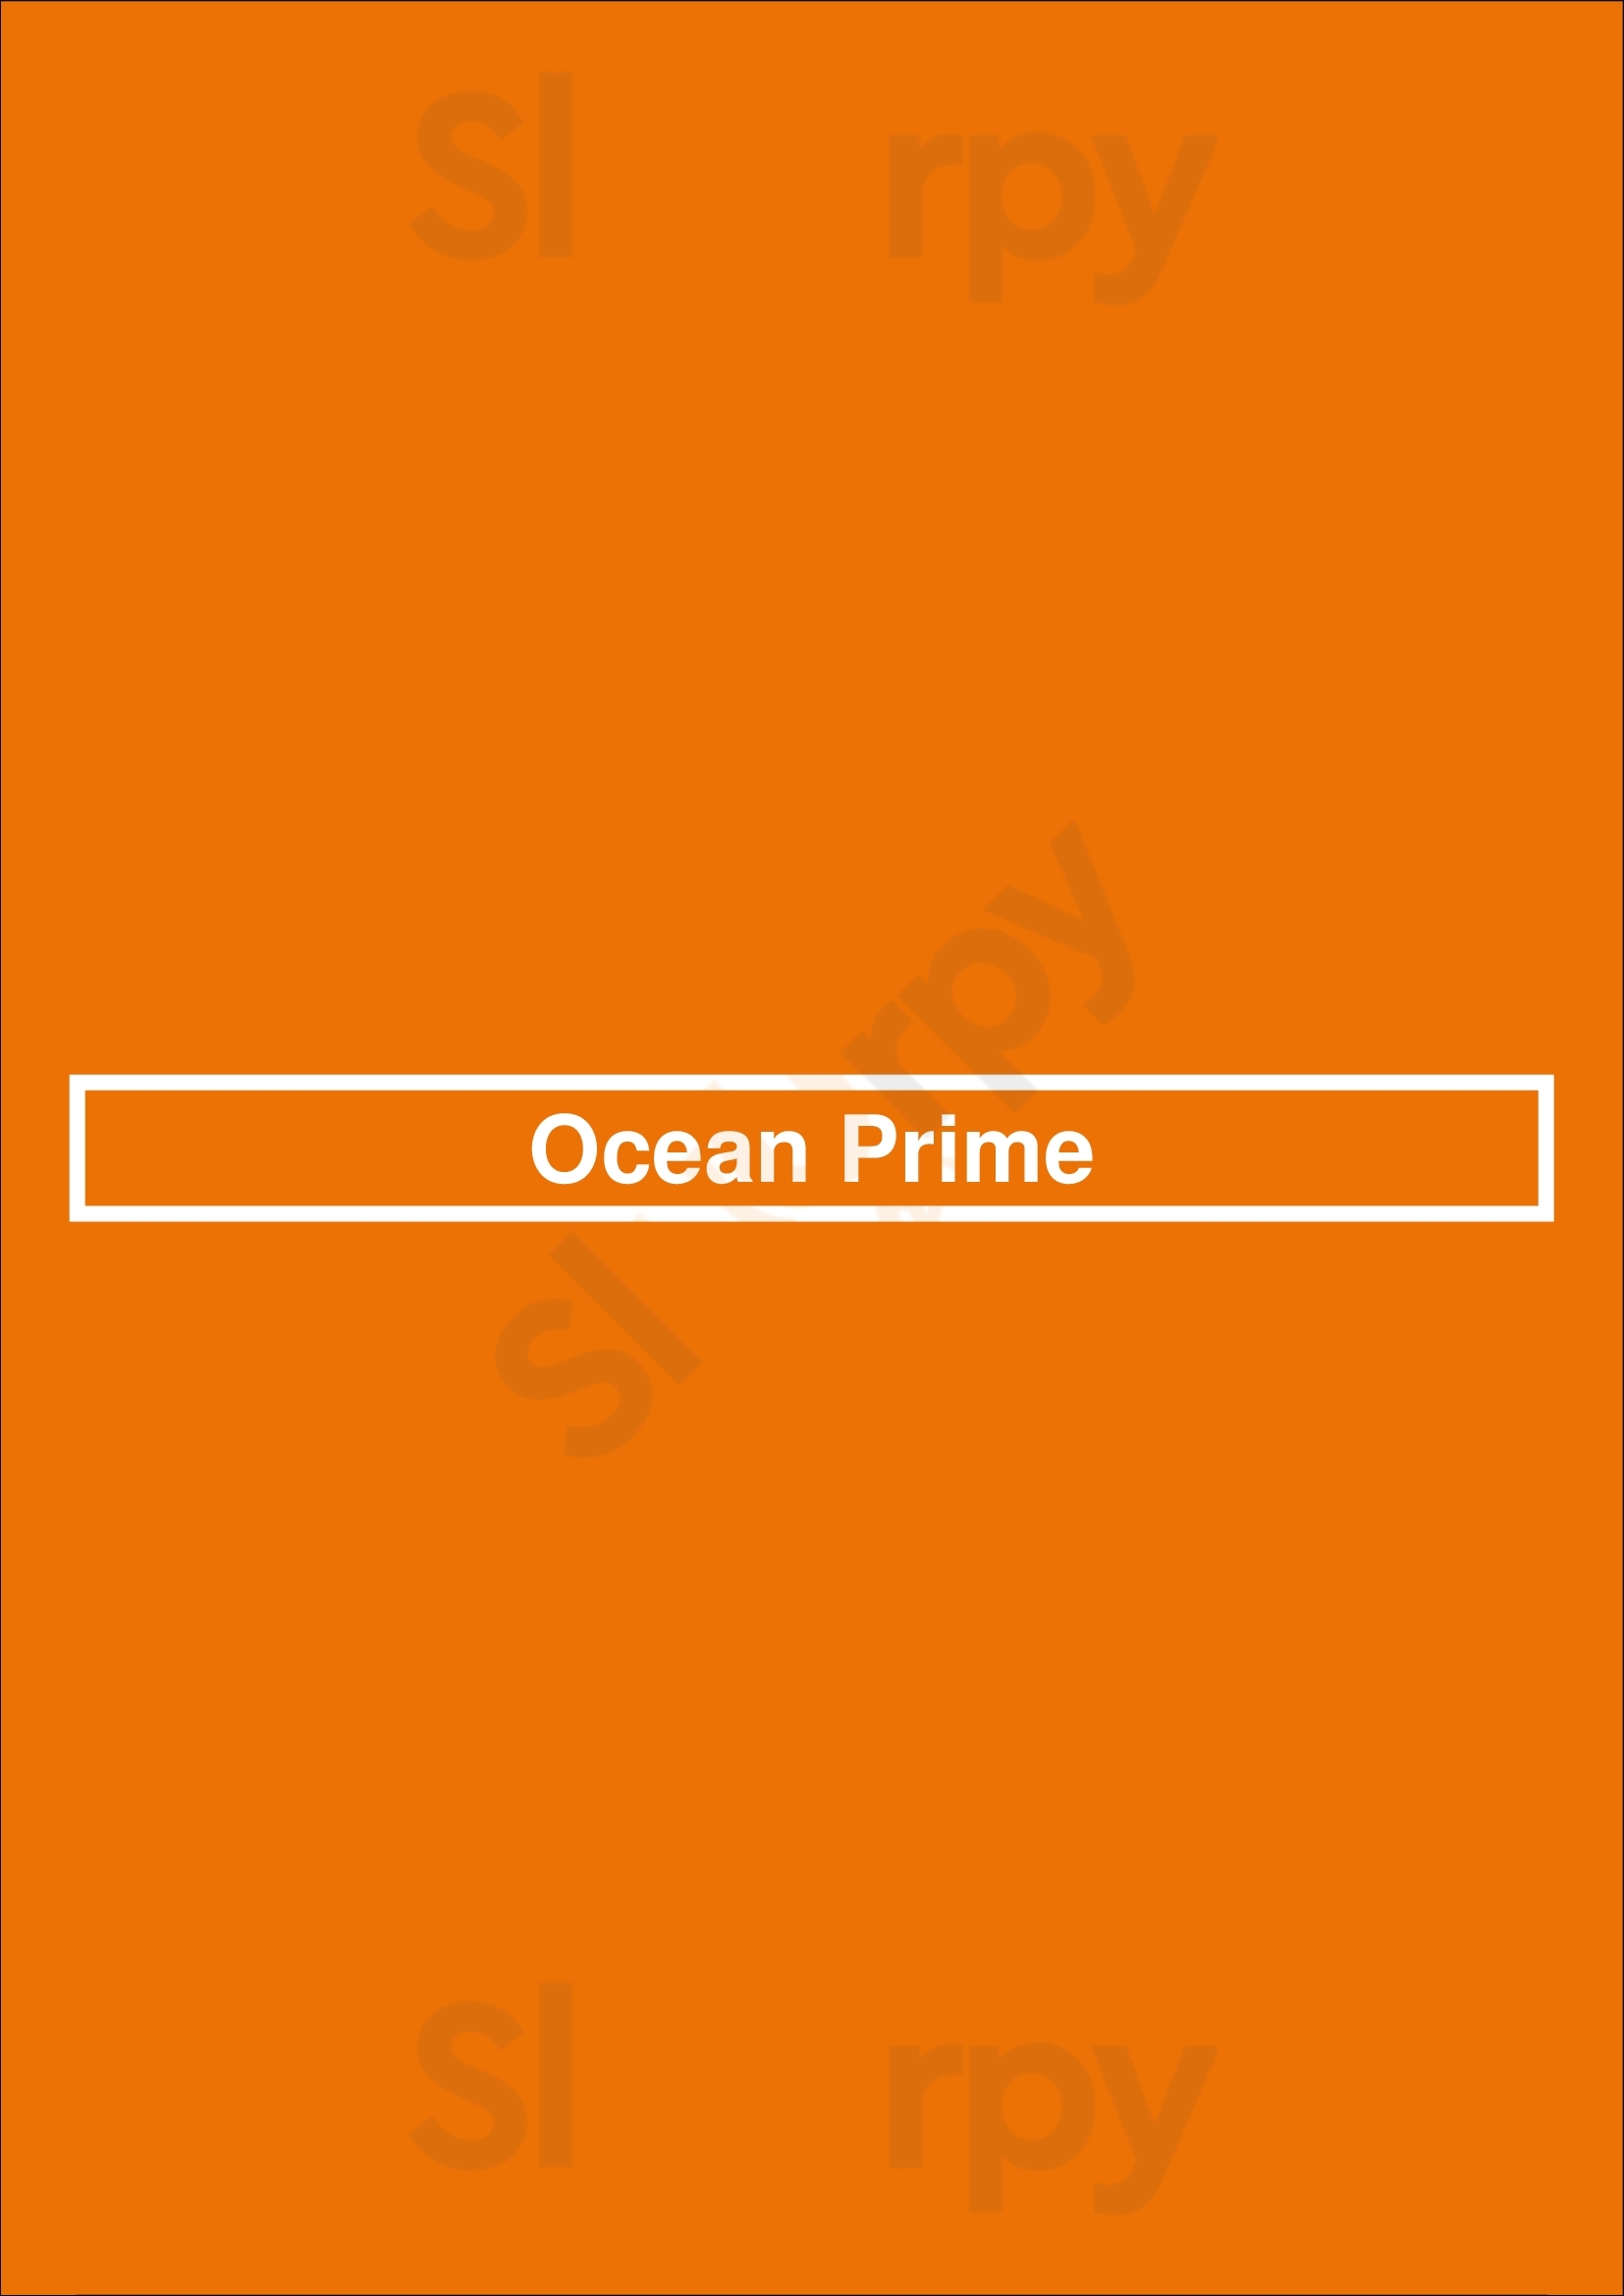 Ocean Prime New York City Menu - 1